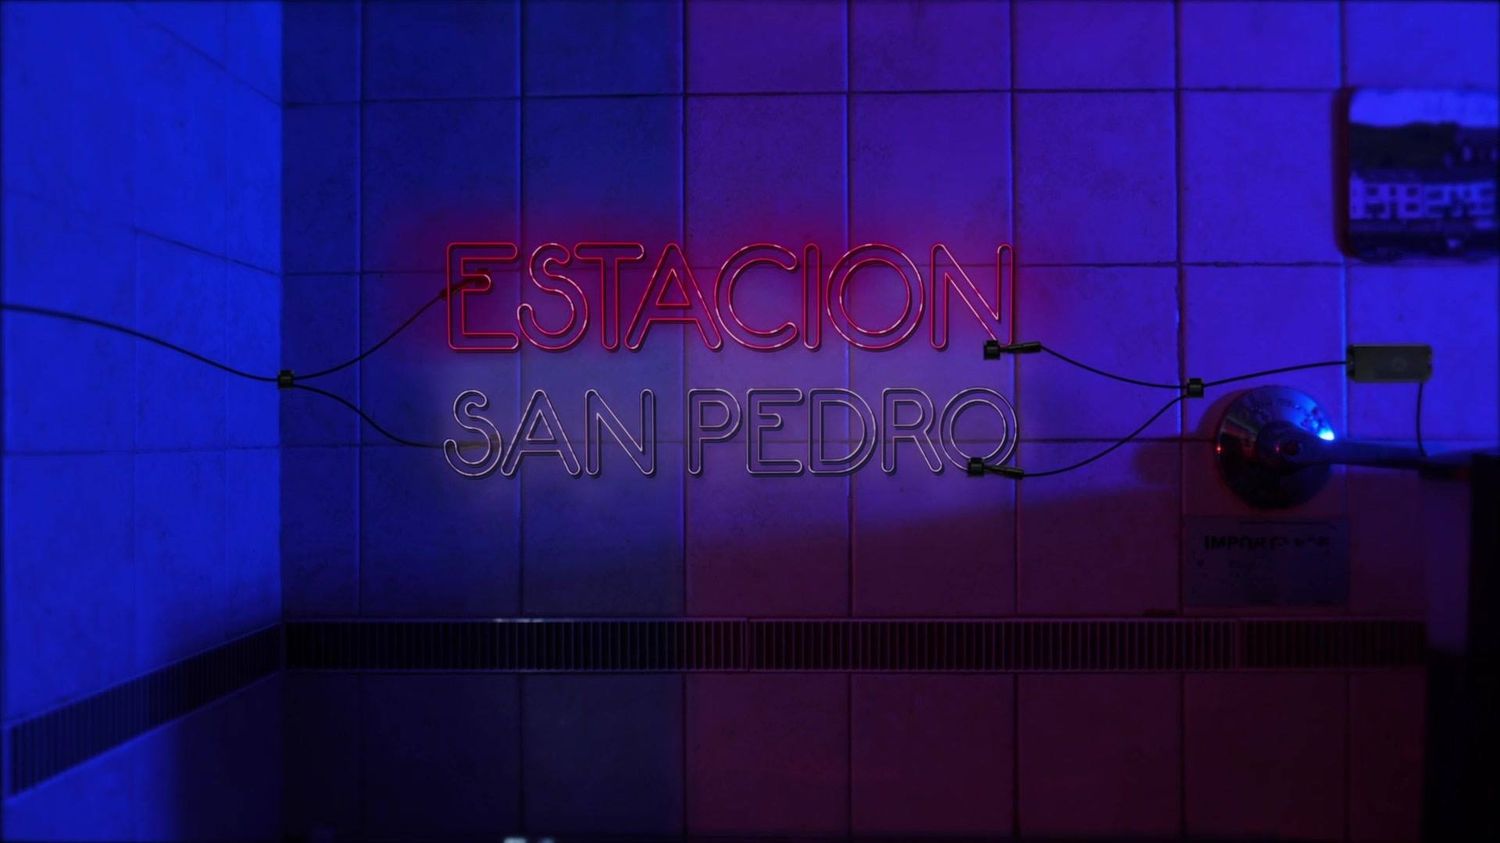 FM Estación San Pedro 88.7 cumplió 12 años